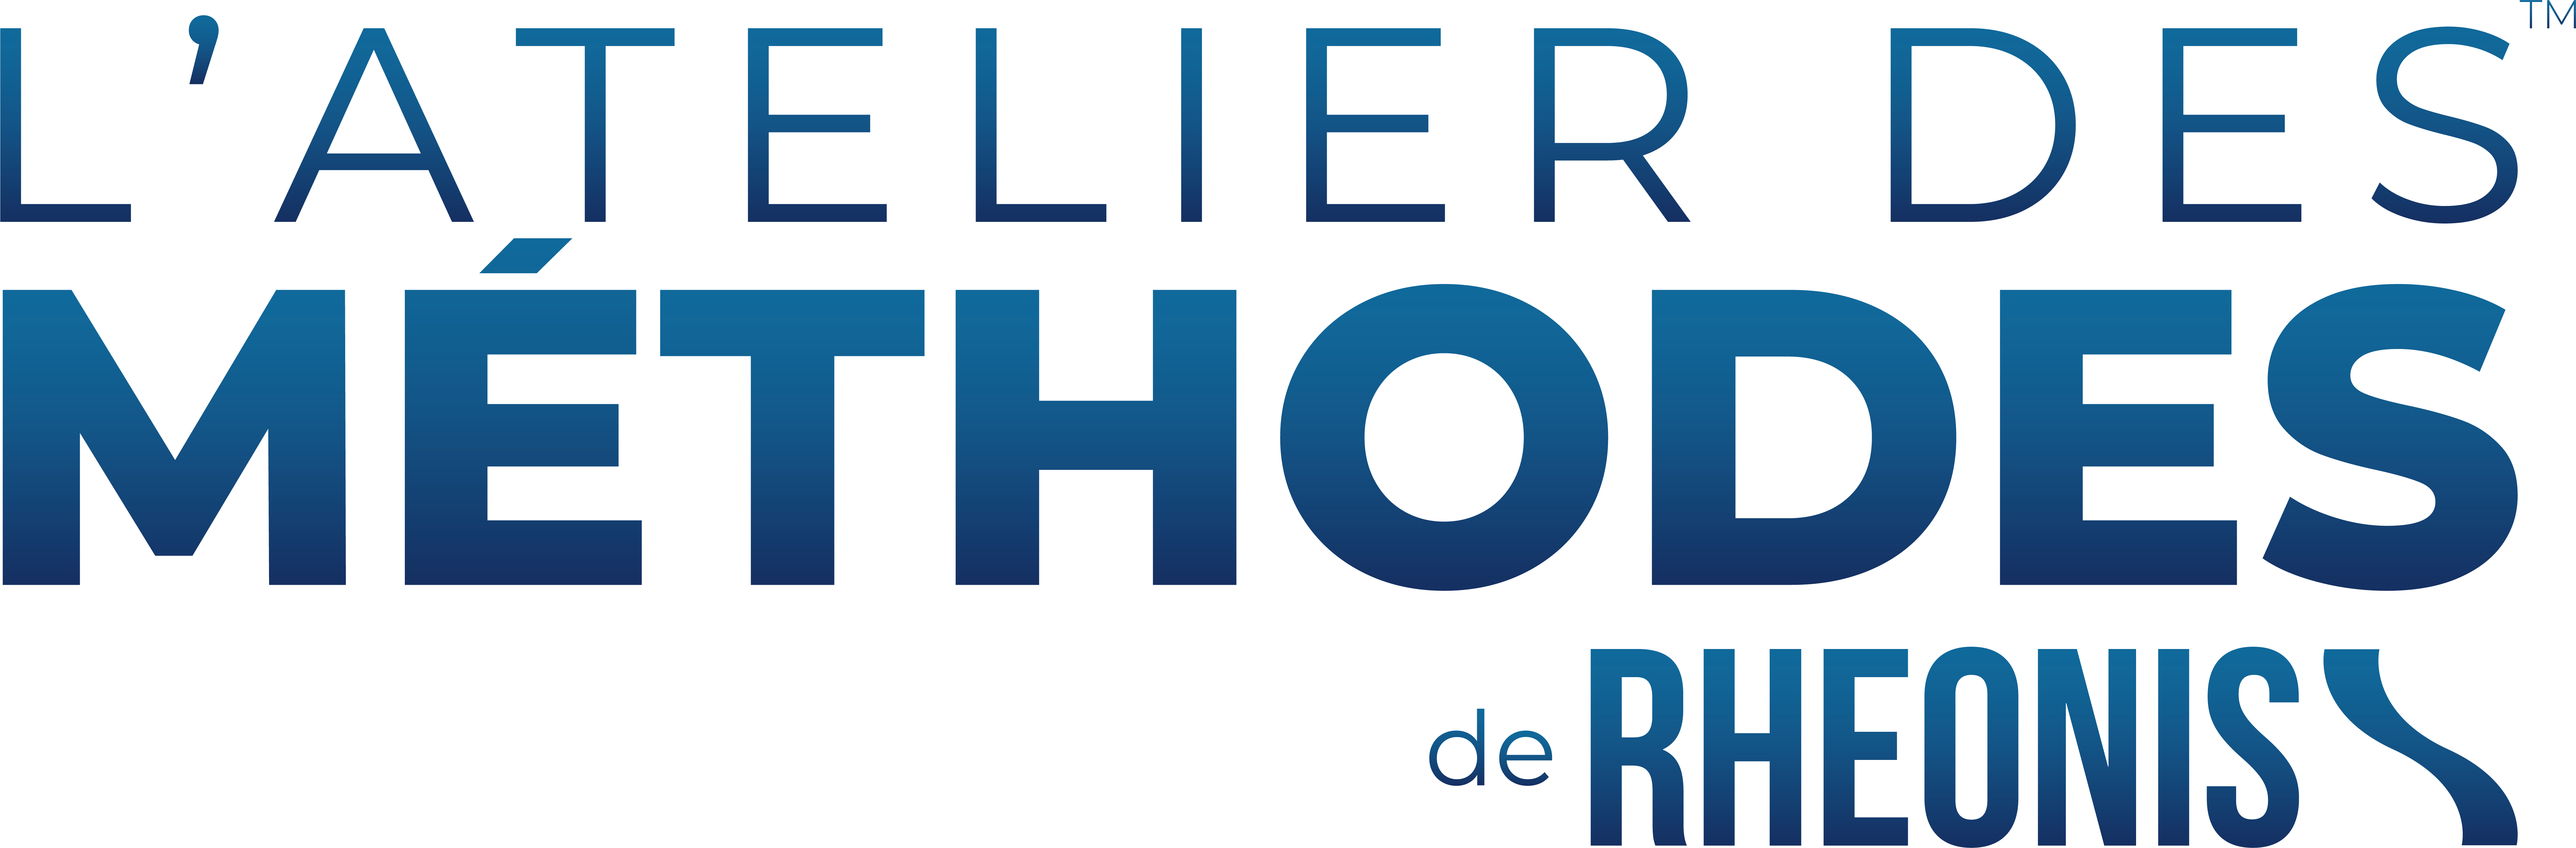 logo-atelier-des-methodes-Rheonis